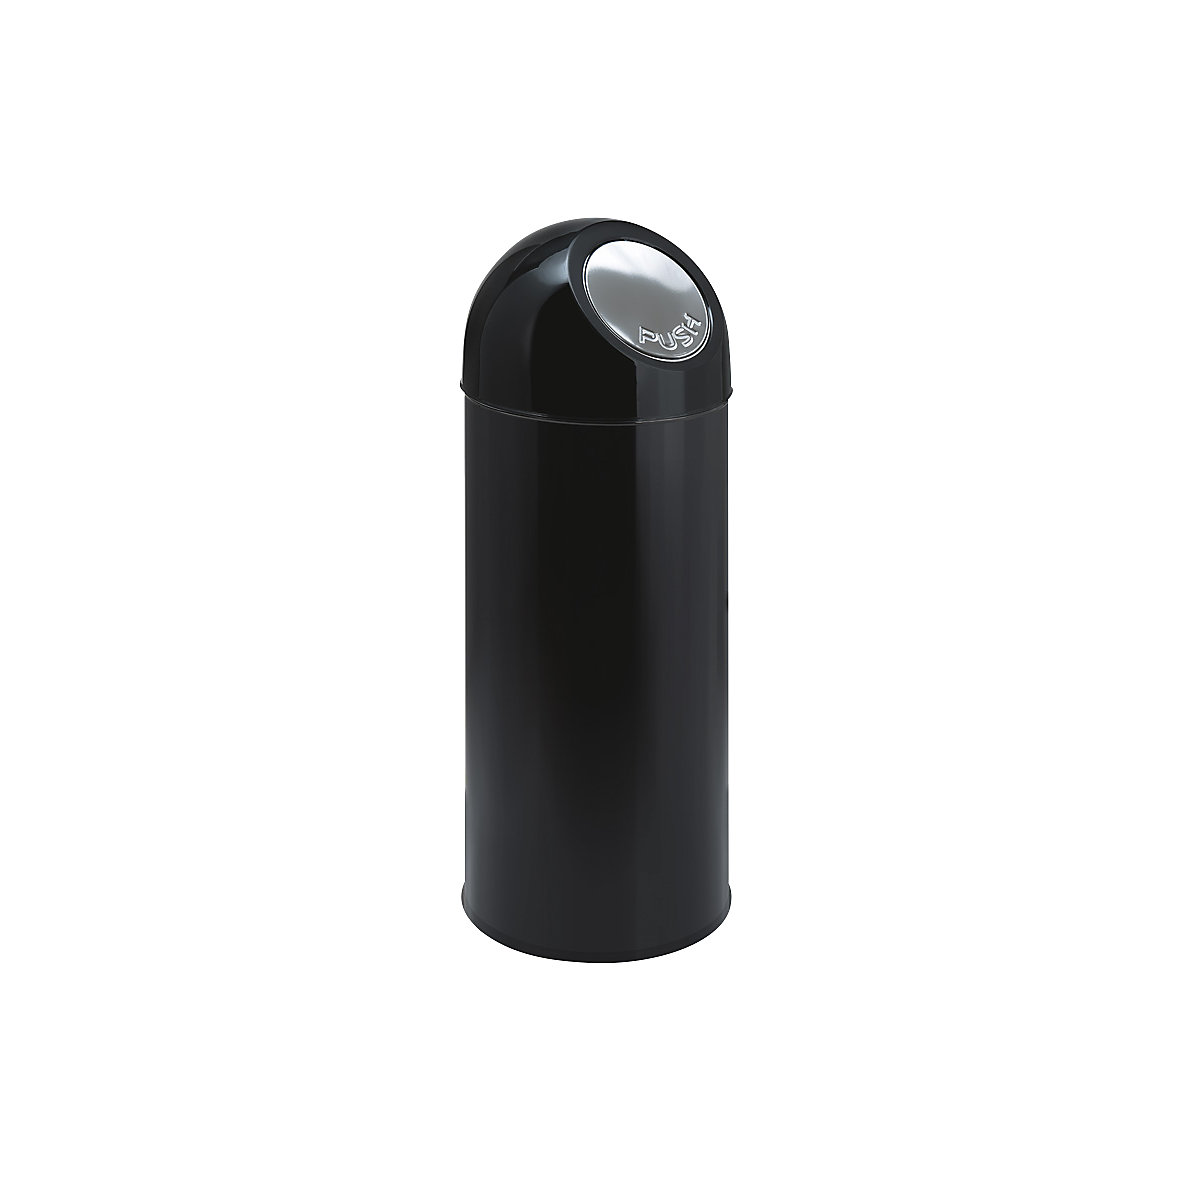 Push-Mülleimer, Volumen 55 l, verzinkter Innenbehälter, schwarz, ab 2 Stk